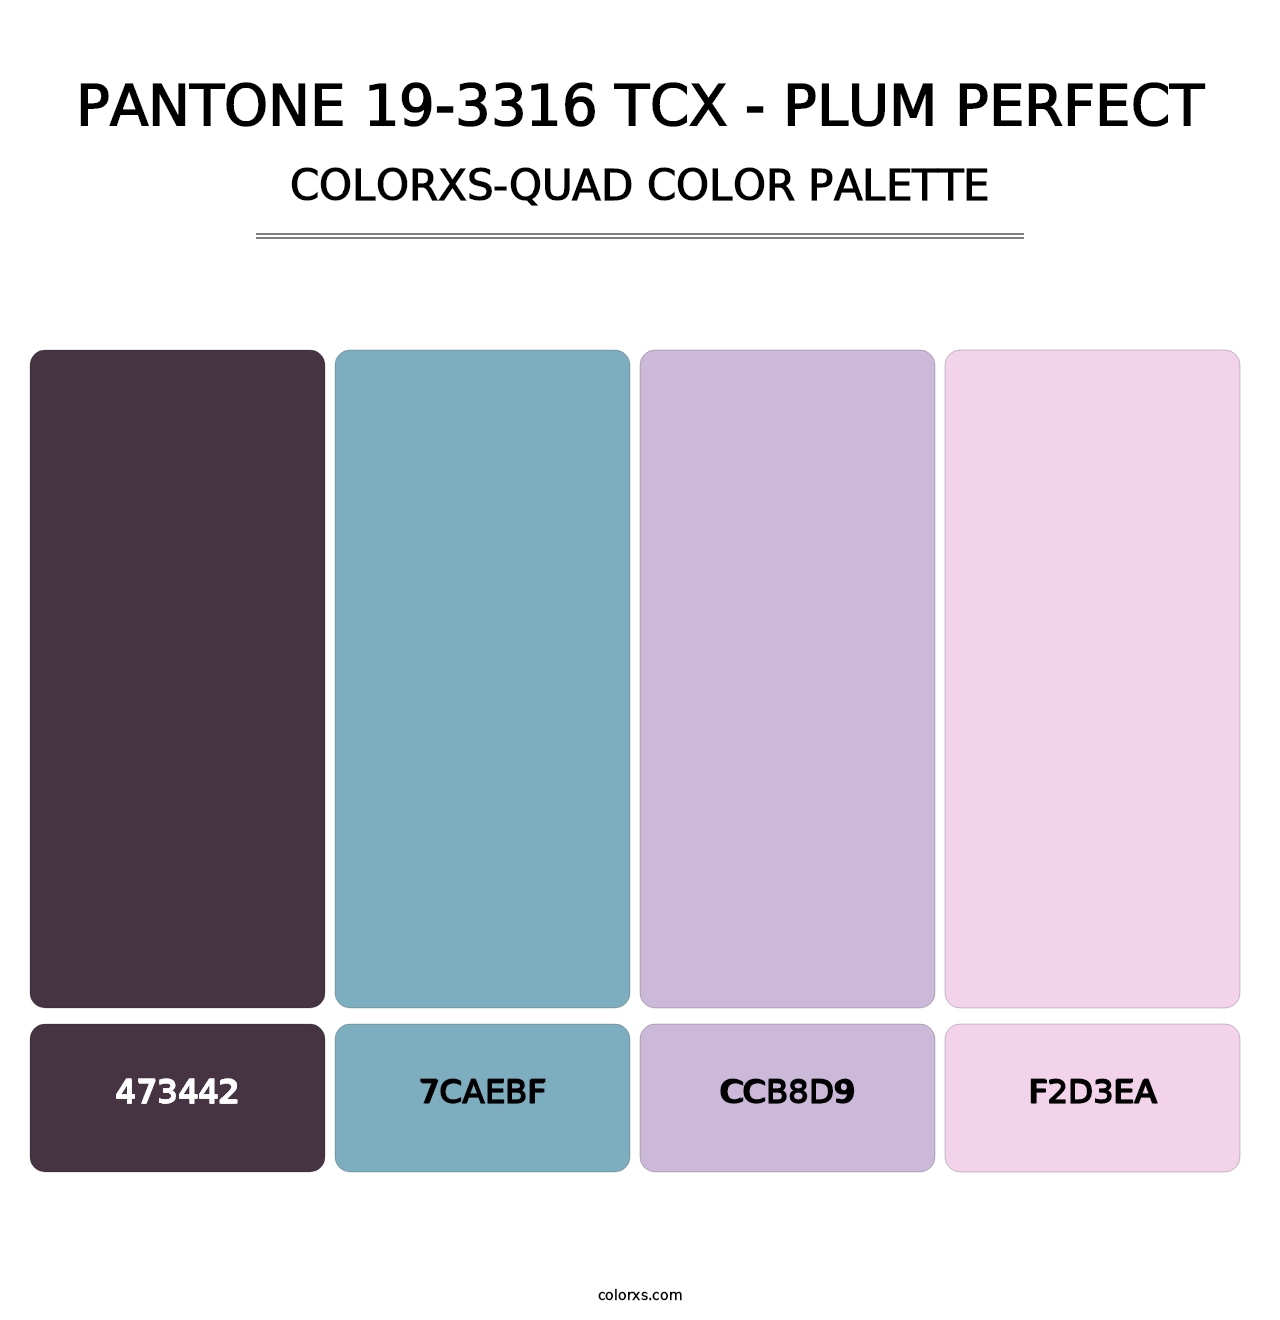 PANTONE 19-3316 TCX - Plum Perfect - Colorxs Quad Palette